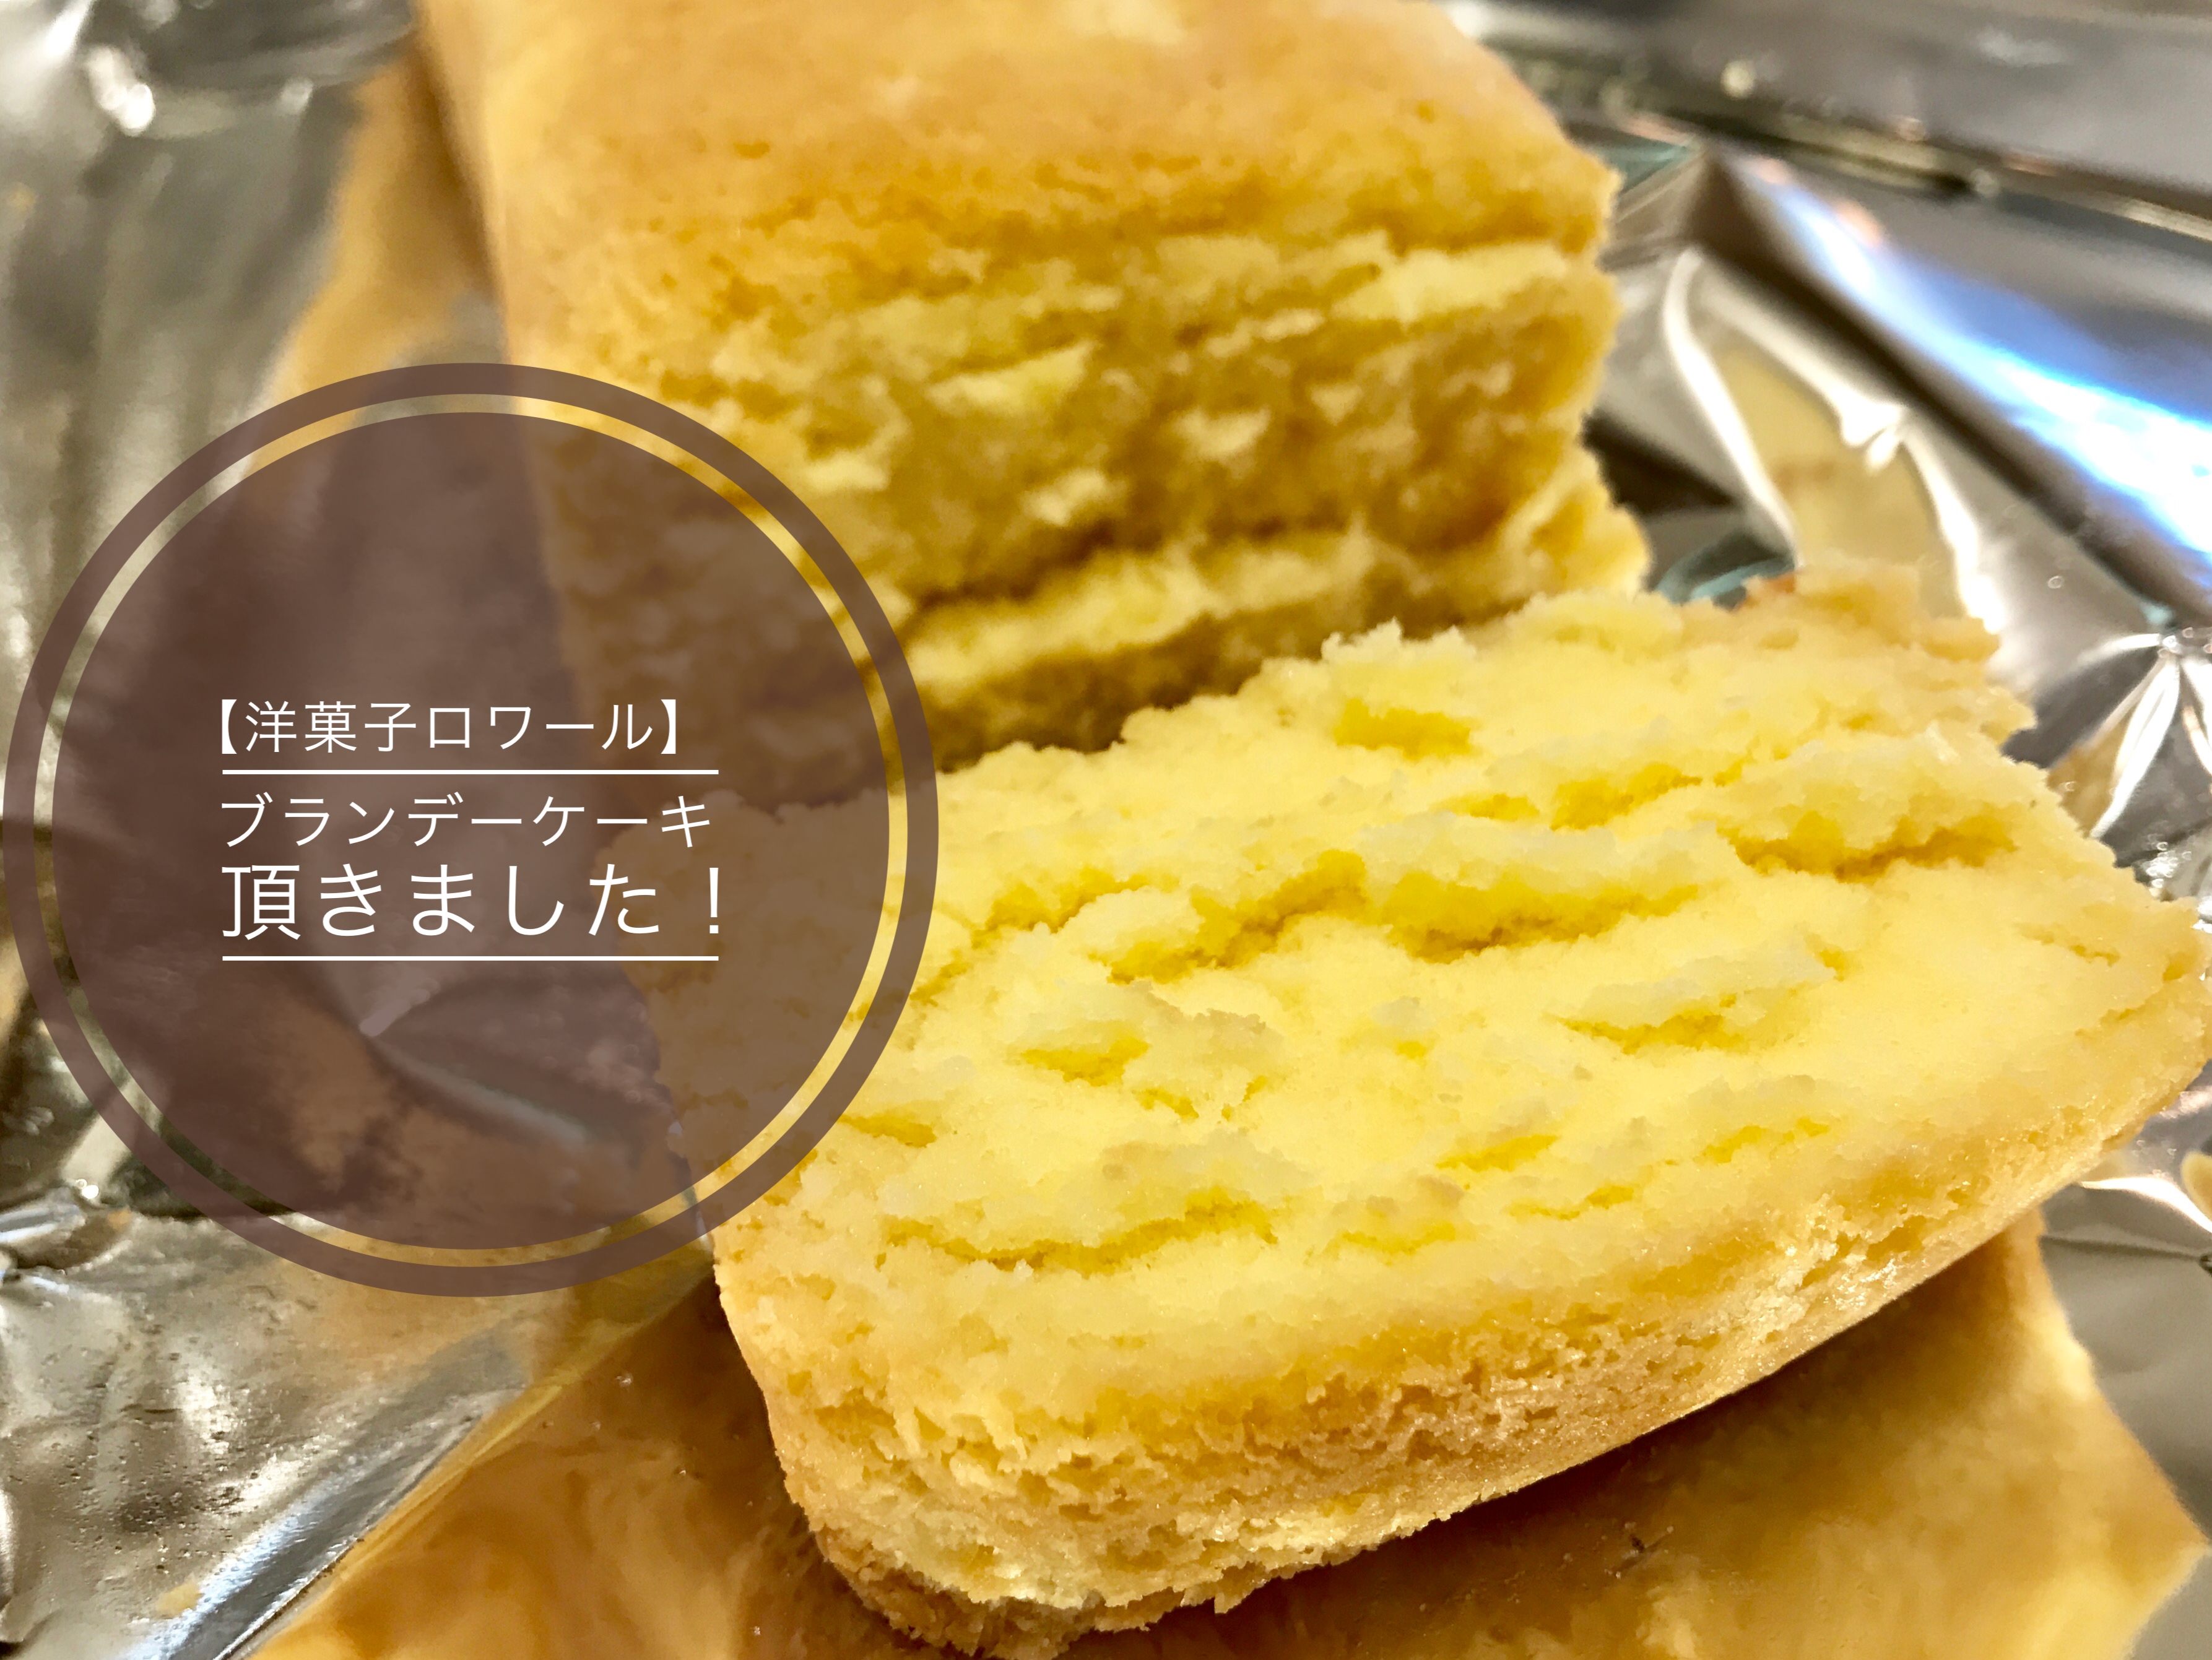 奥沢 洋菓子ロワール の ふわっふわなブランデーケーキが美味しい Pelodias